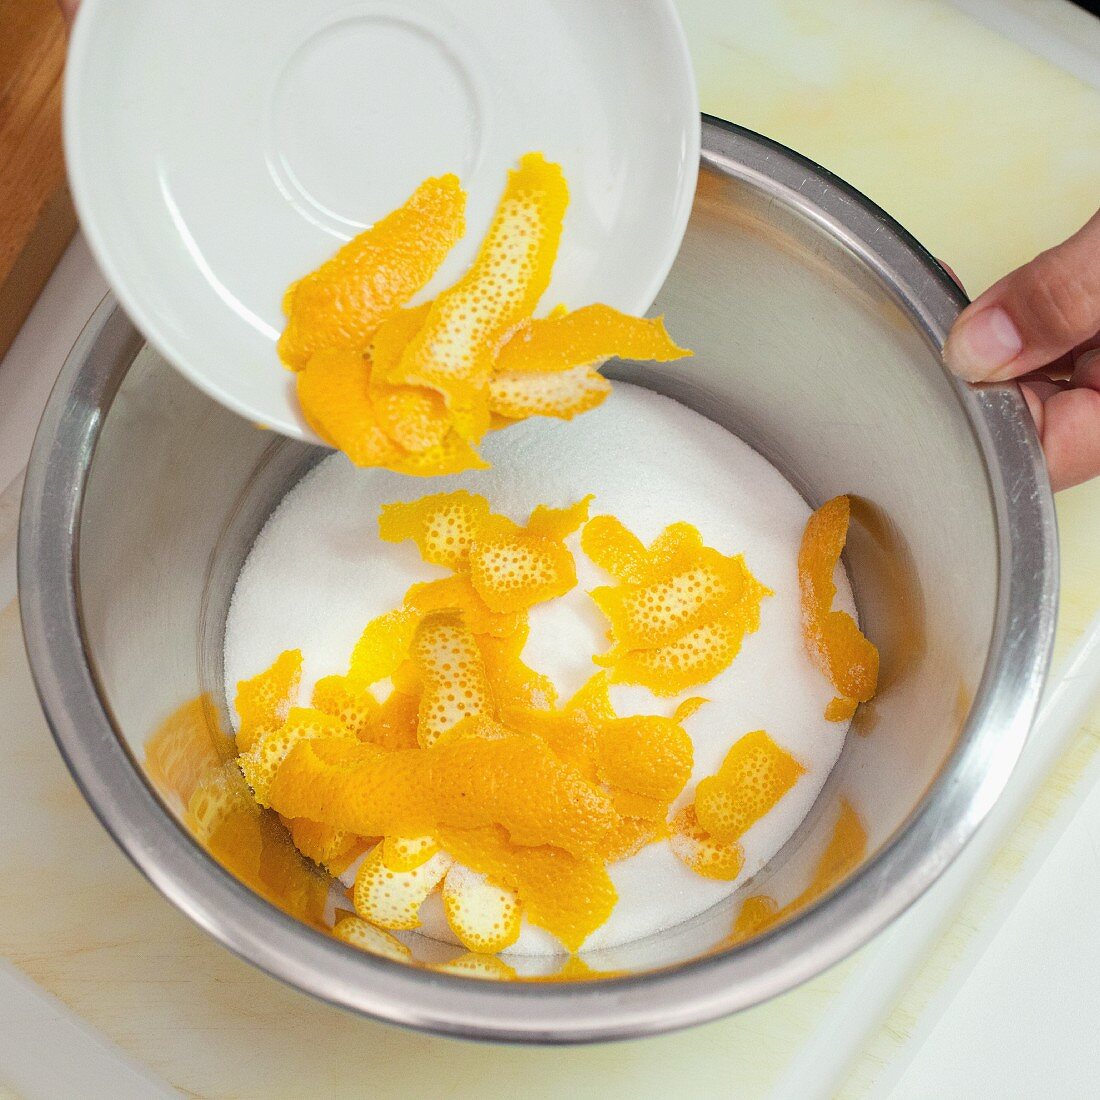 Orange peel being added to sugar to make orange and lavender sugar